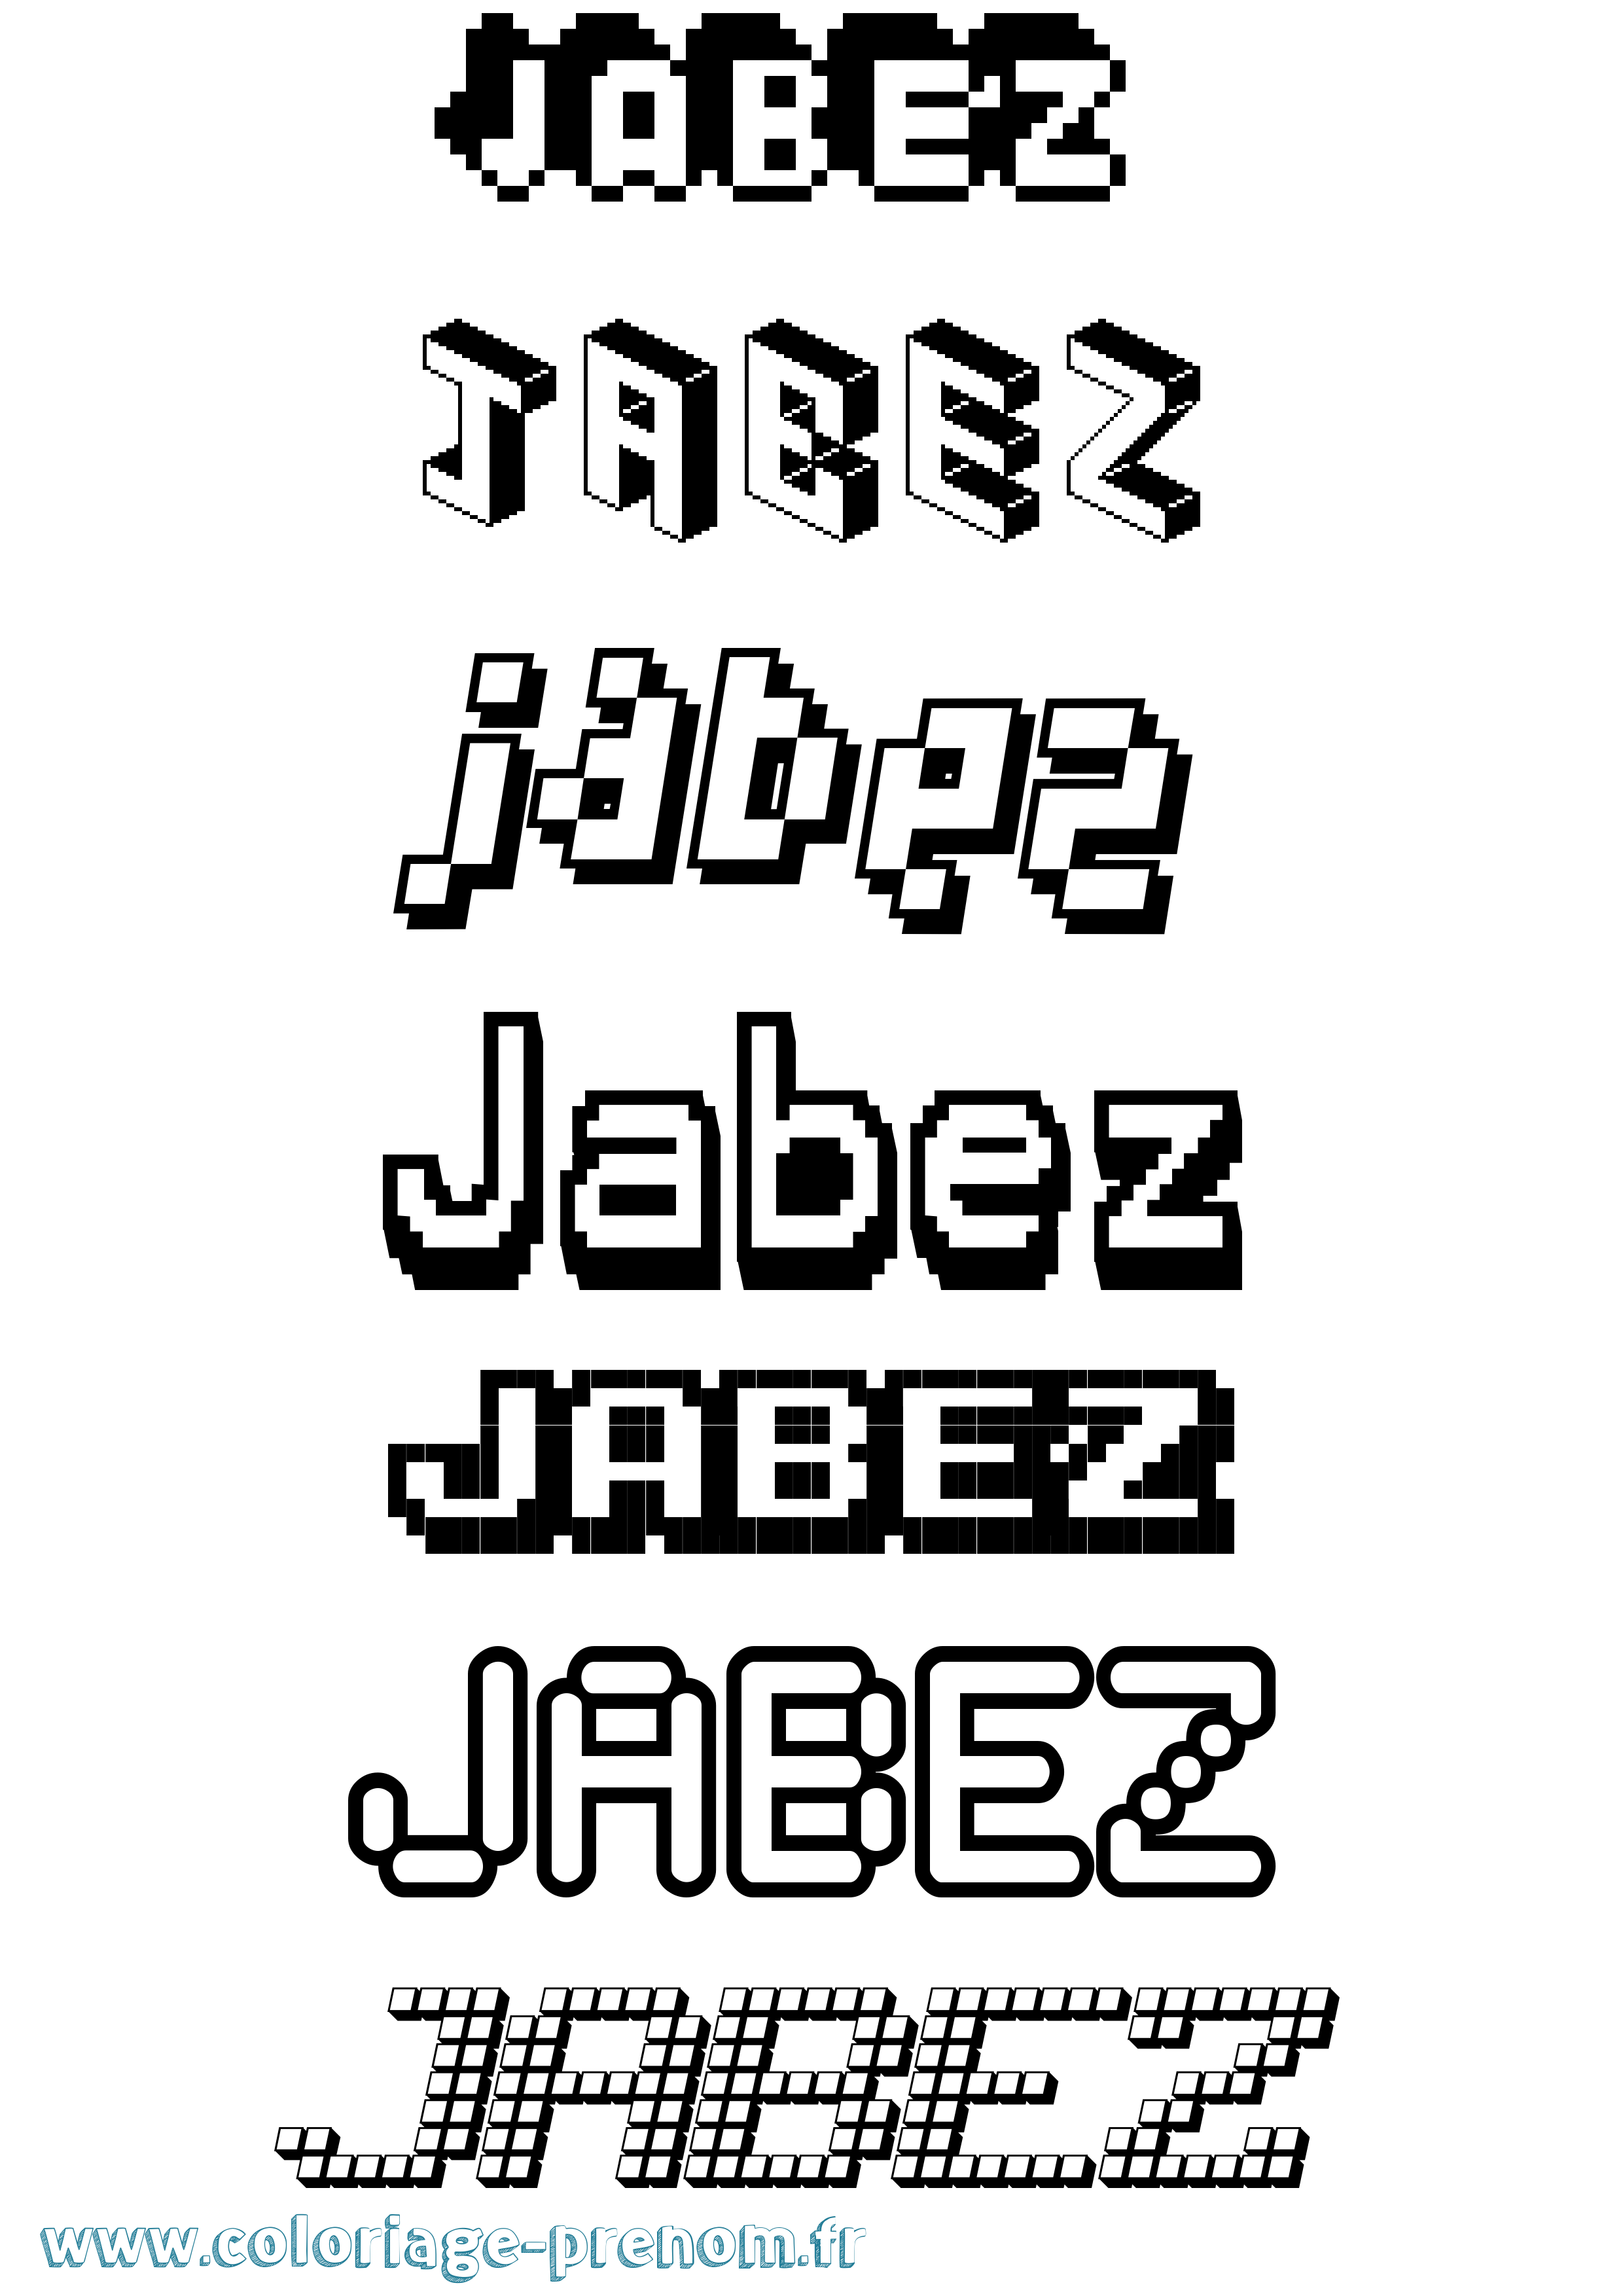 Coloriage prénom Jabez Pixel